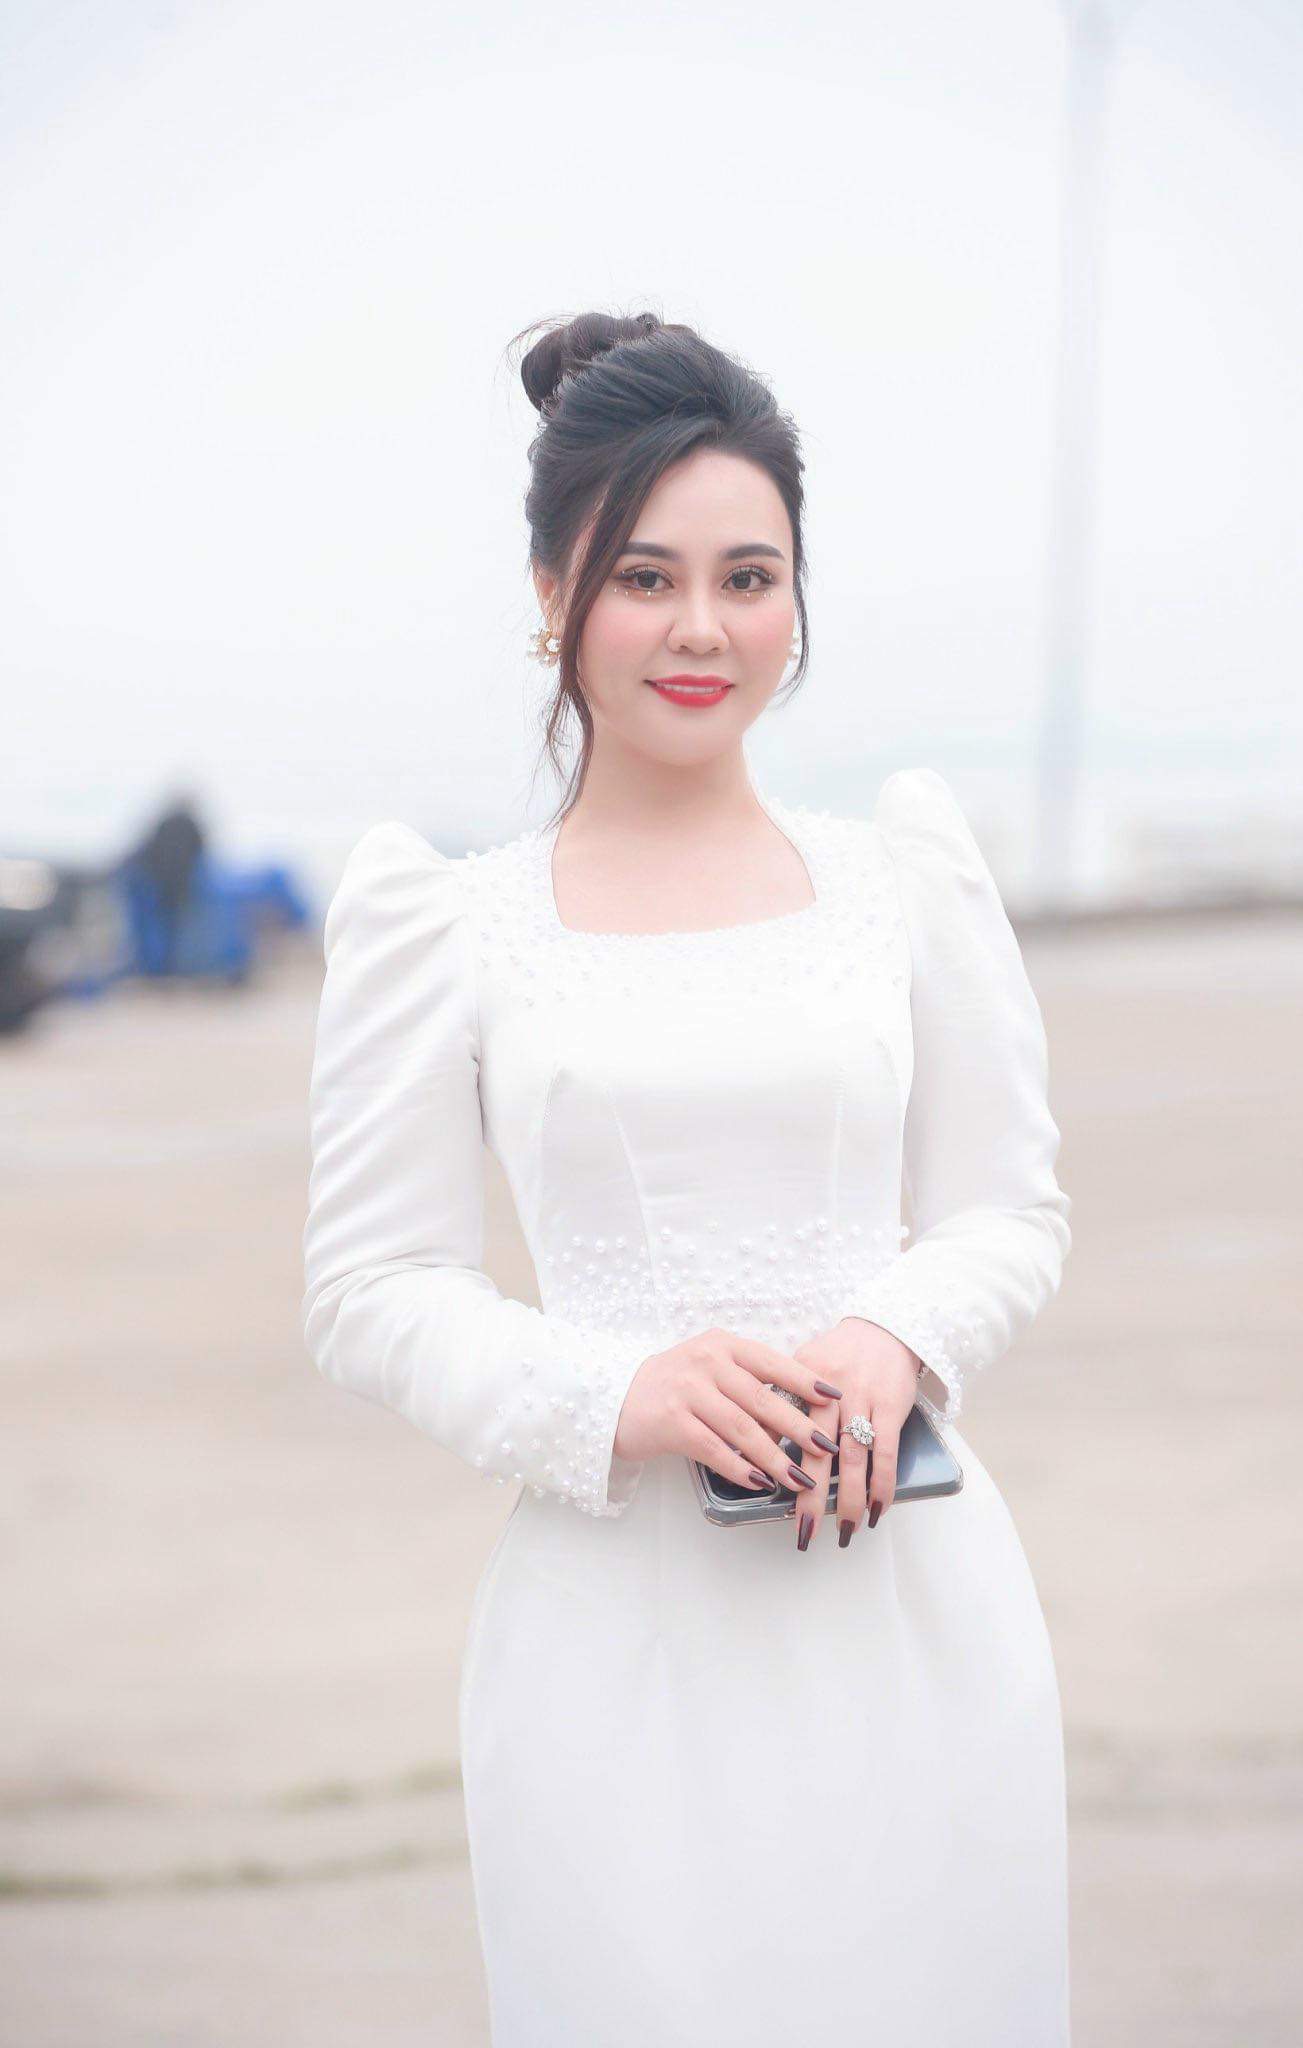 Hoa hậu Phan Kim Oanh dùng hết tiền cát xê để từ thiện